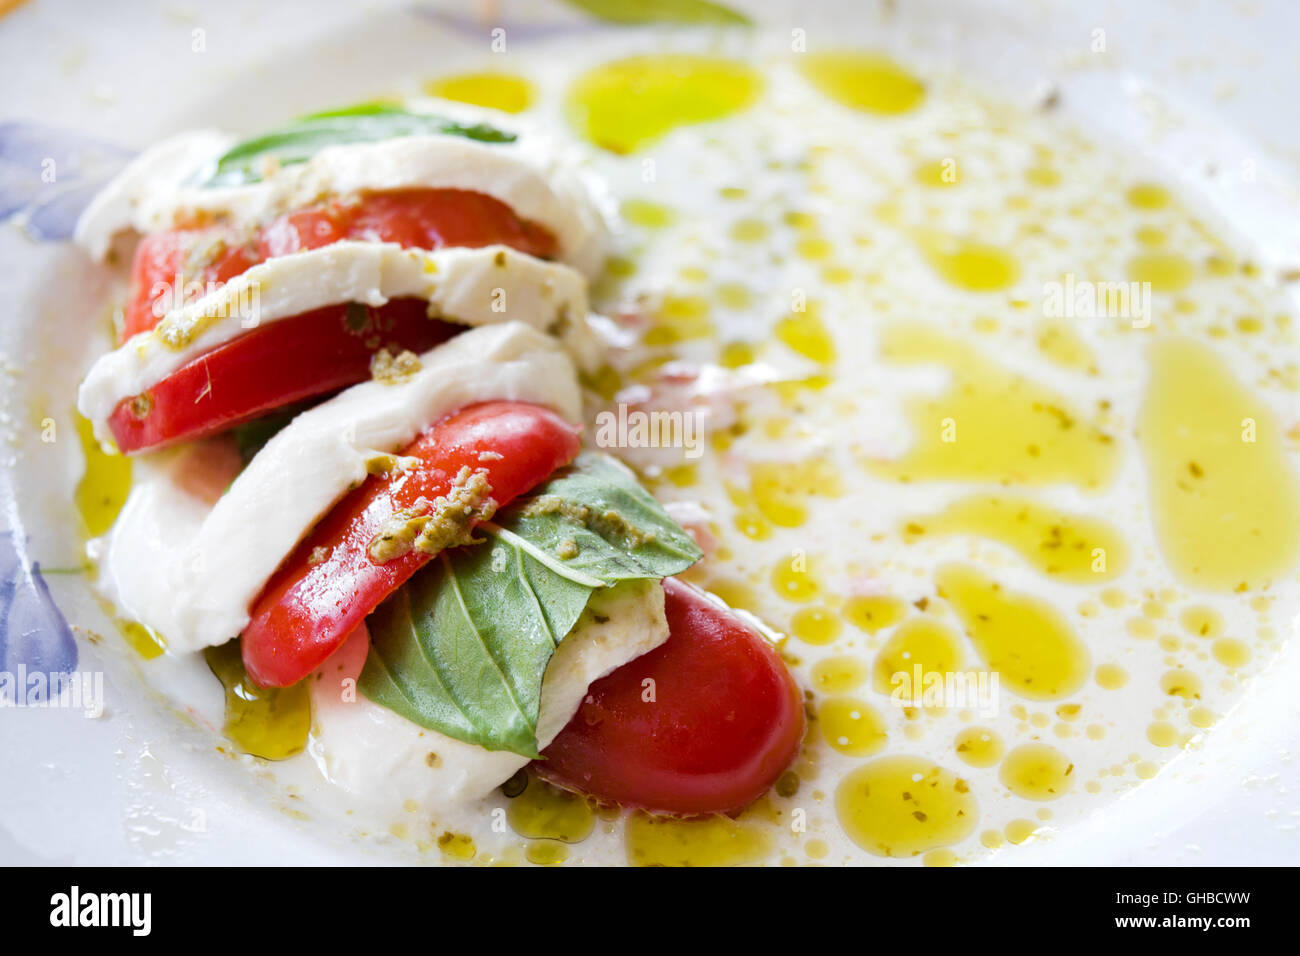 Salade Caprese faite de tranches de mozzarella, tomates et basilic vert, assaisonnées à l'huile d'olive Banque D'Images